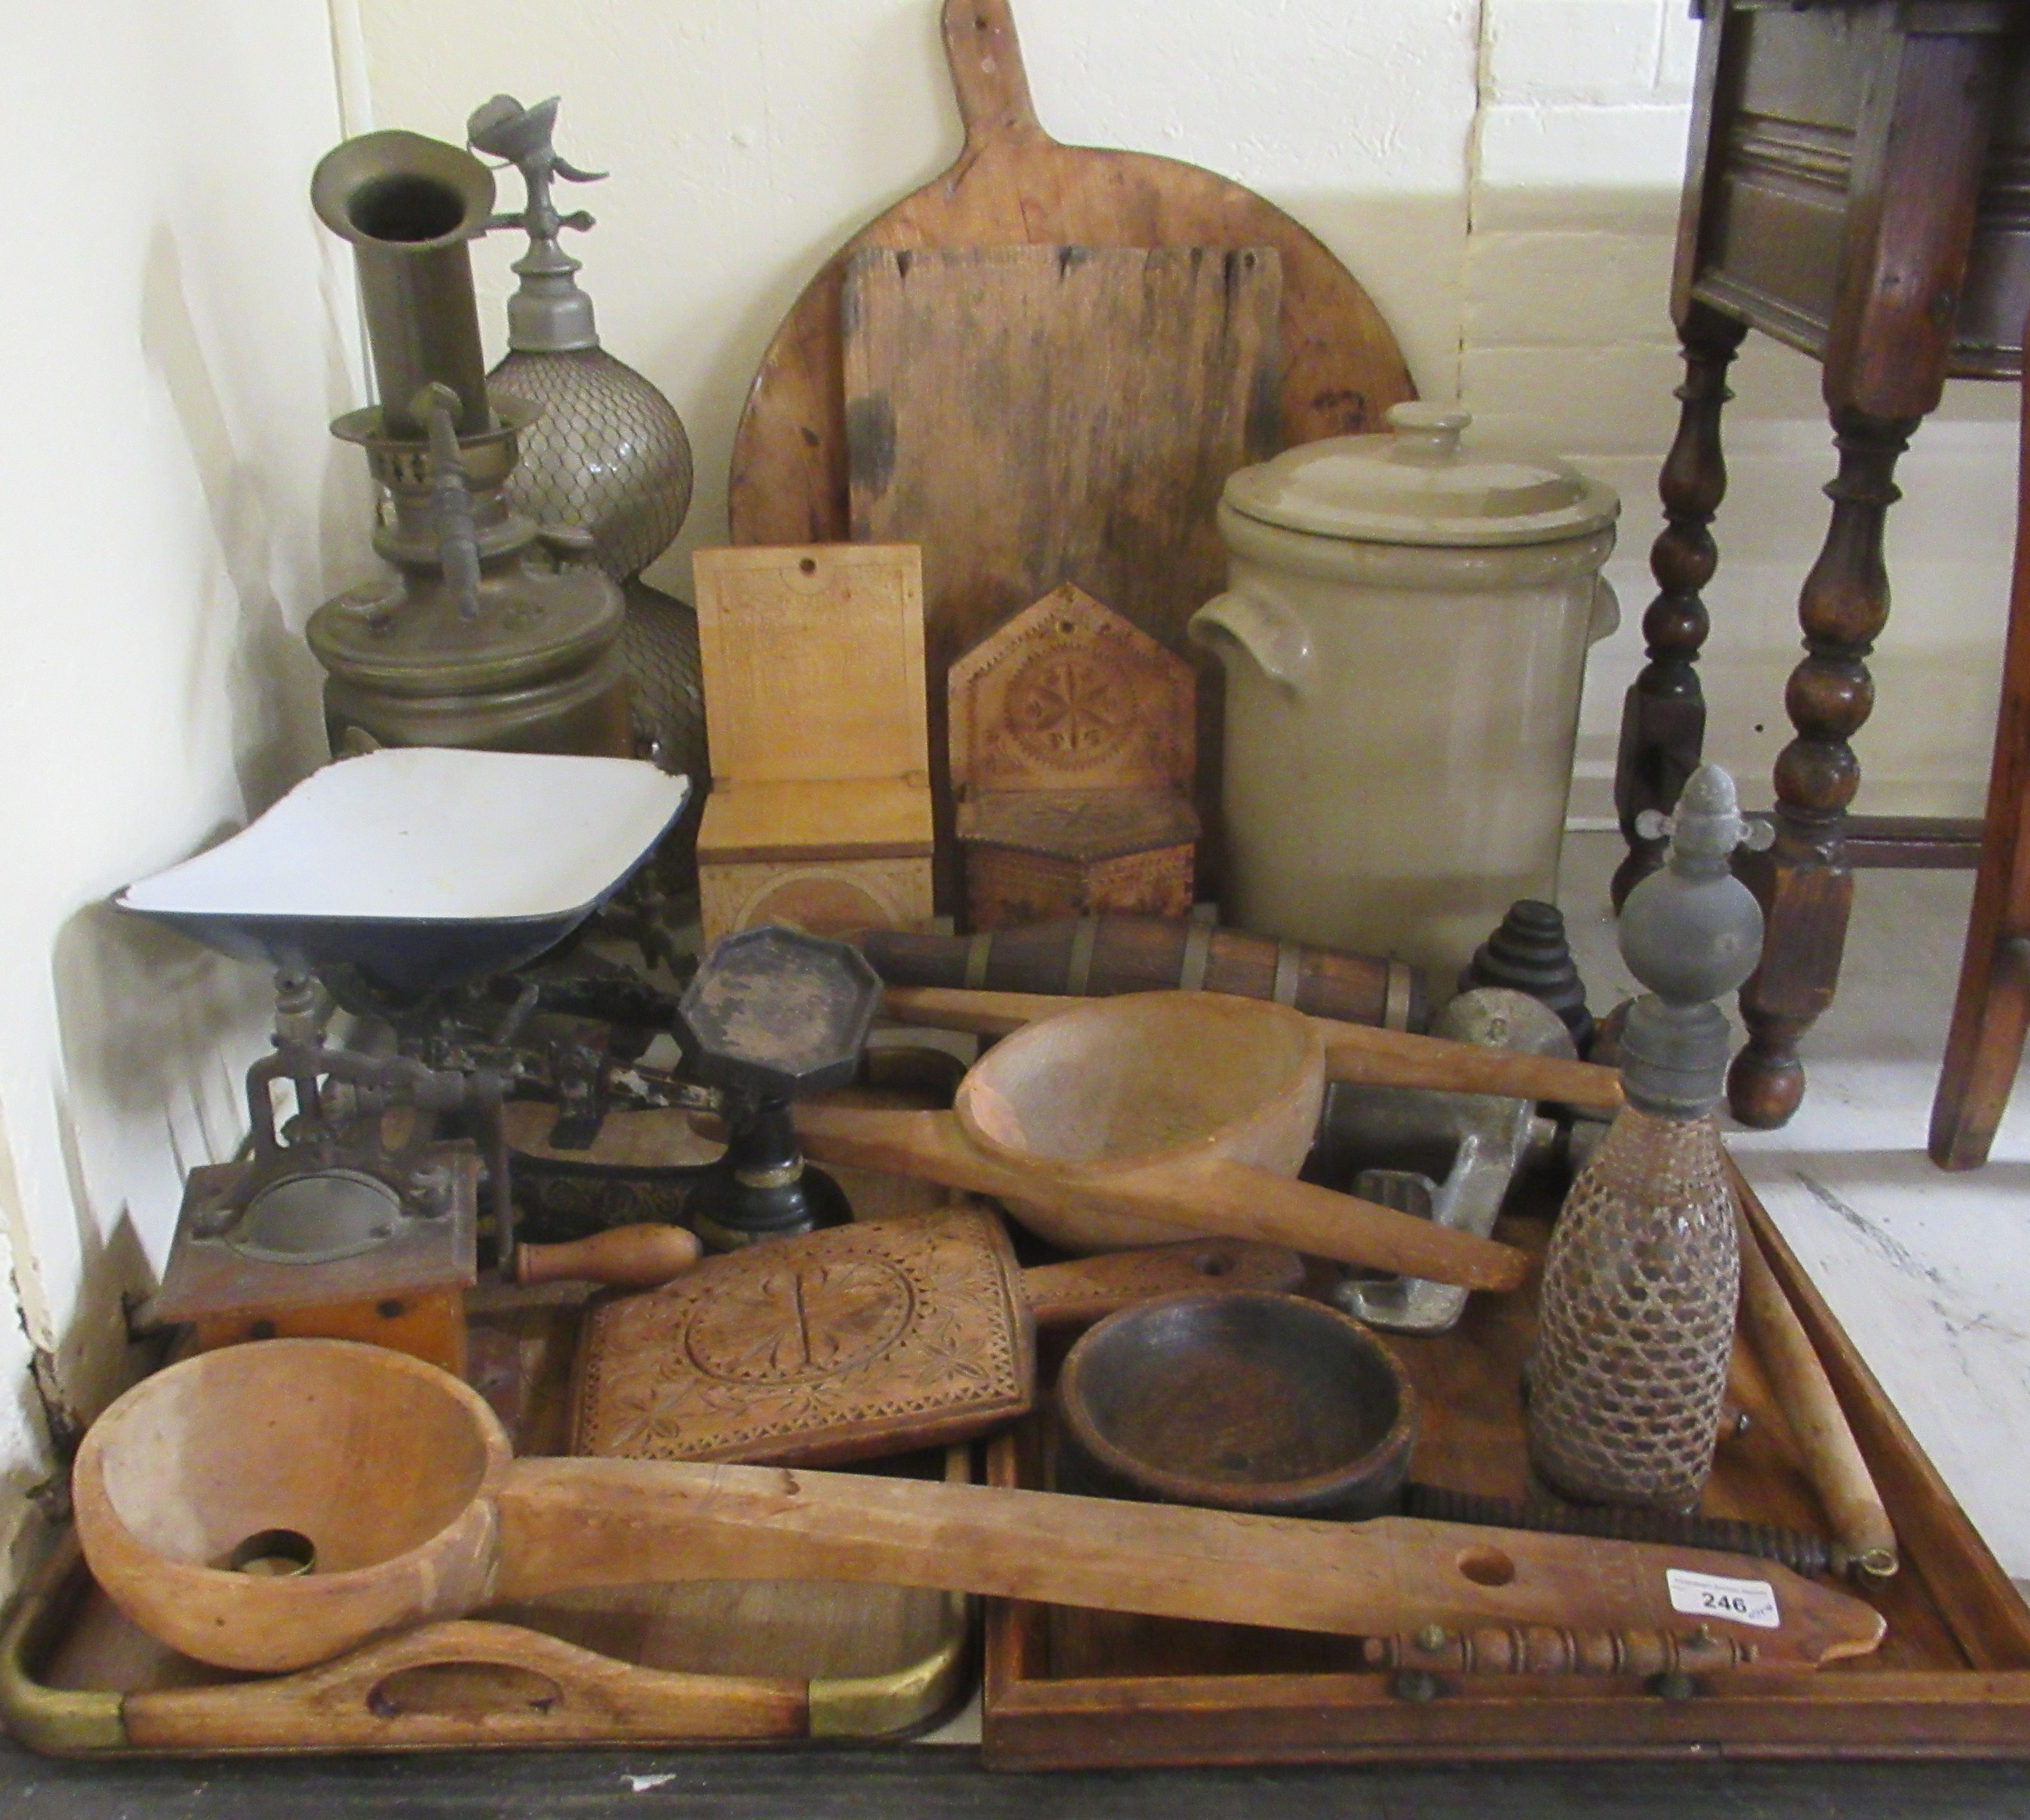 Wooden implements and vintage kitchen bygones